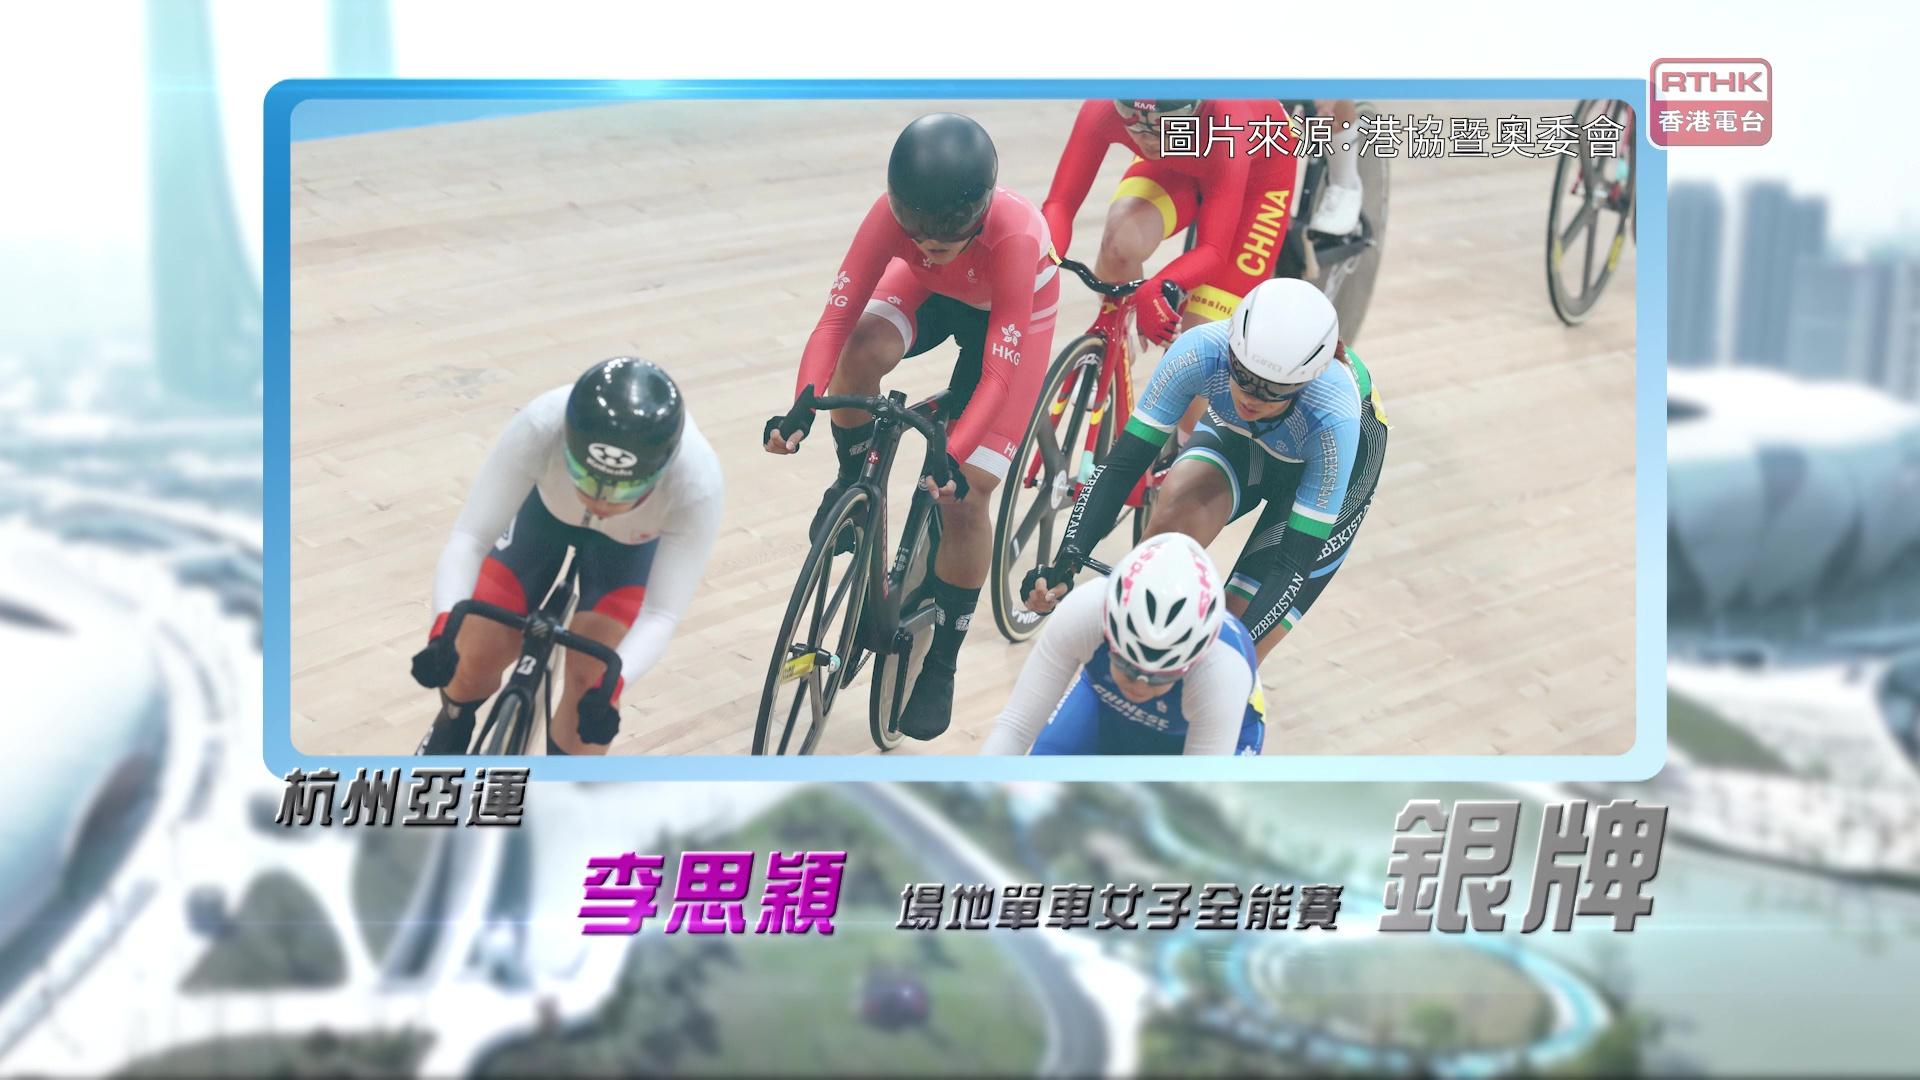 恭喜李思颖于杭州亚运场地单车女子全能赛夺得银牌